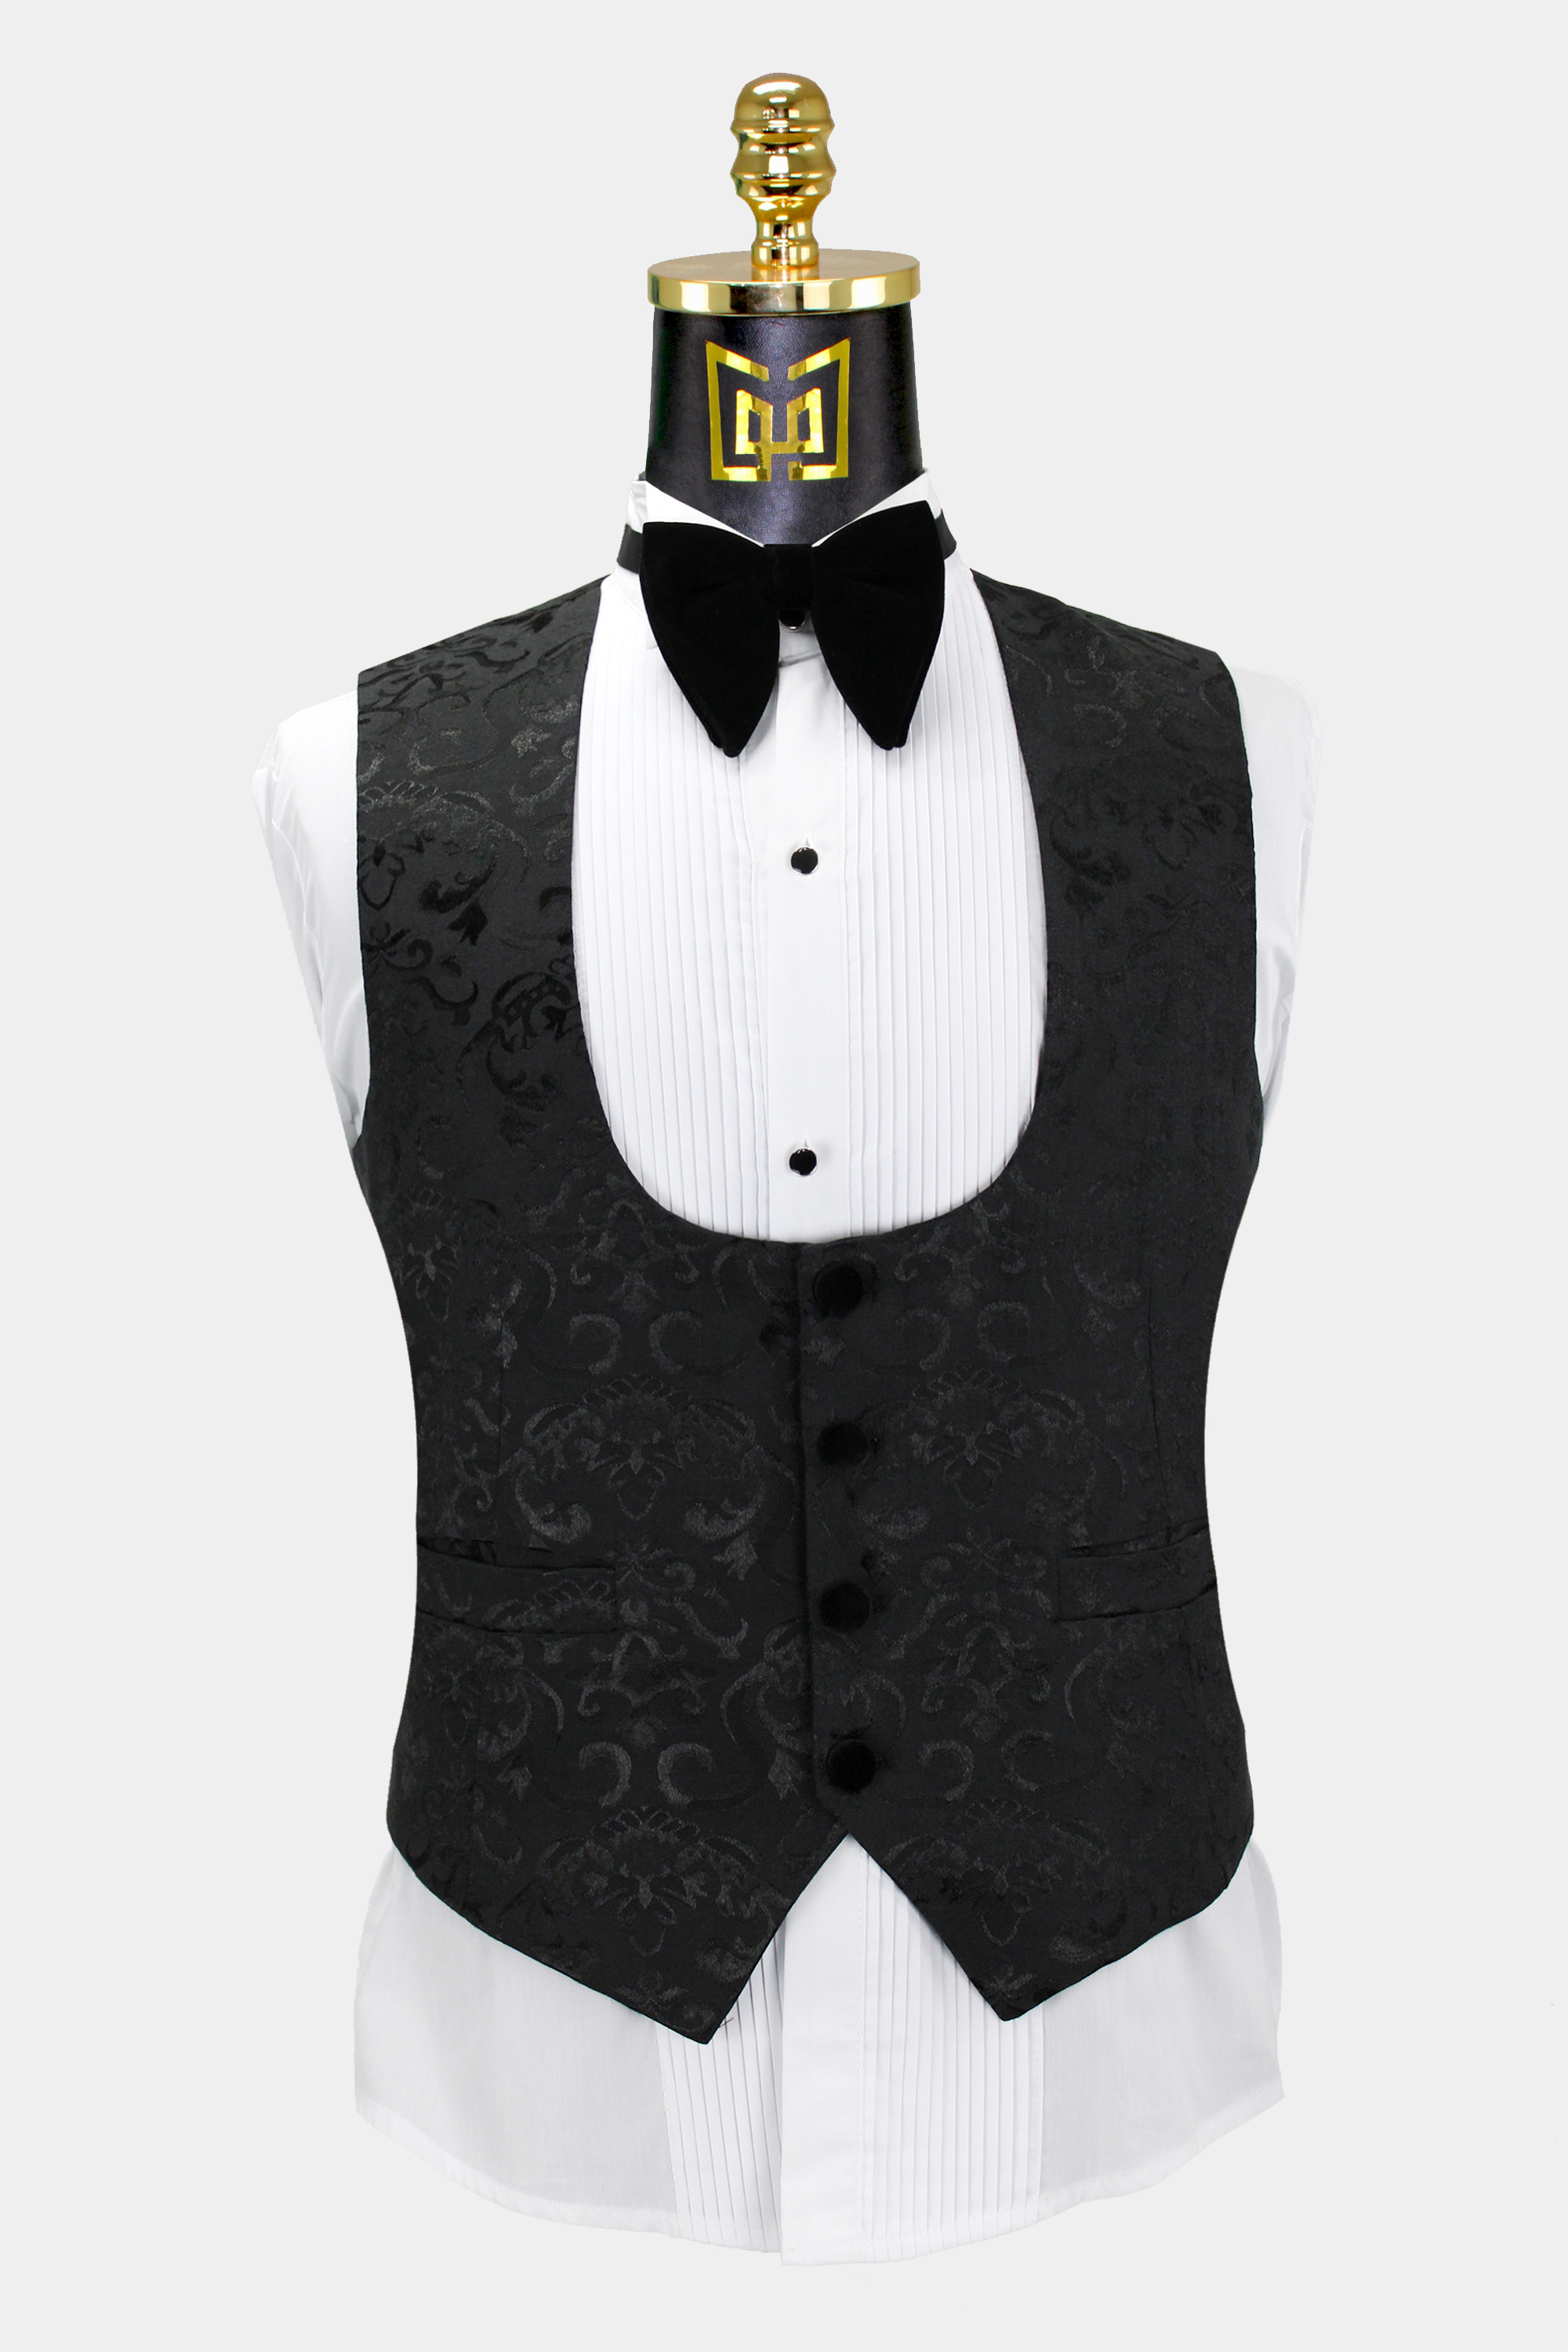 Mens-Black-Damask-Tuxedo-Vest-Wedding-Waistcoat-from-Gentlemansguru.com